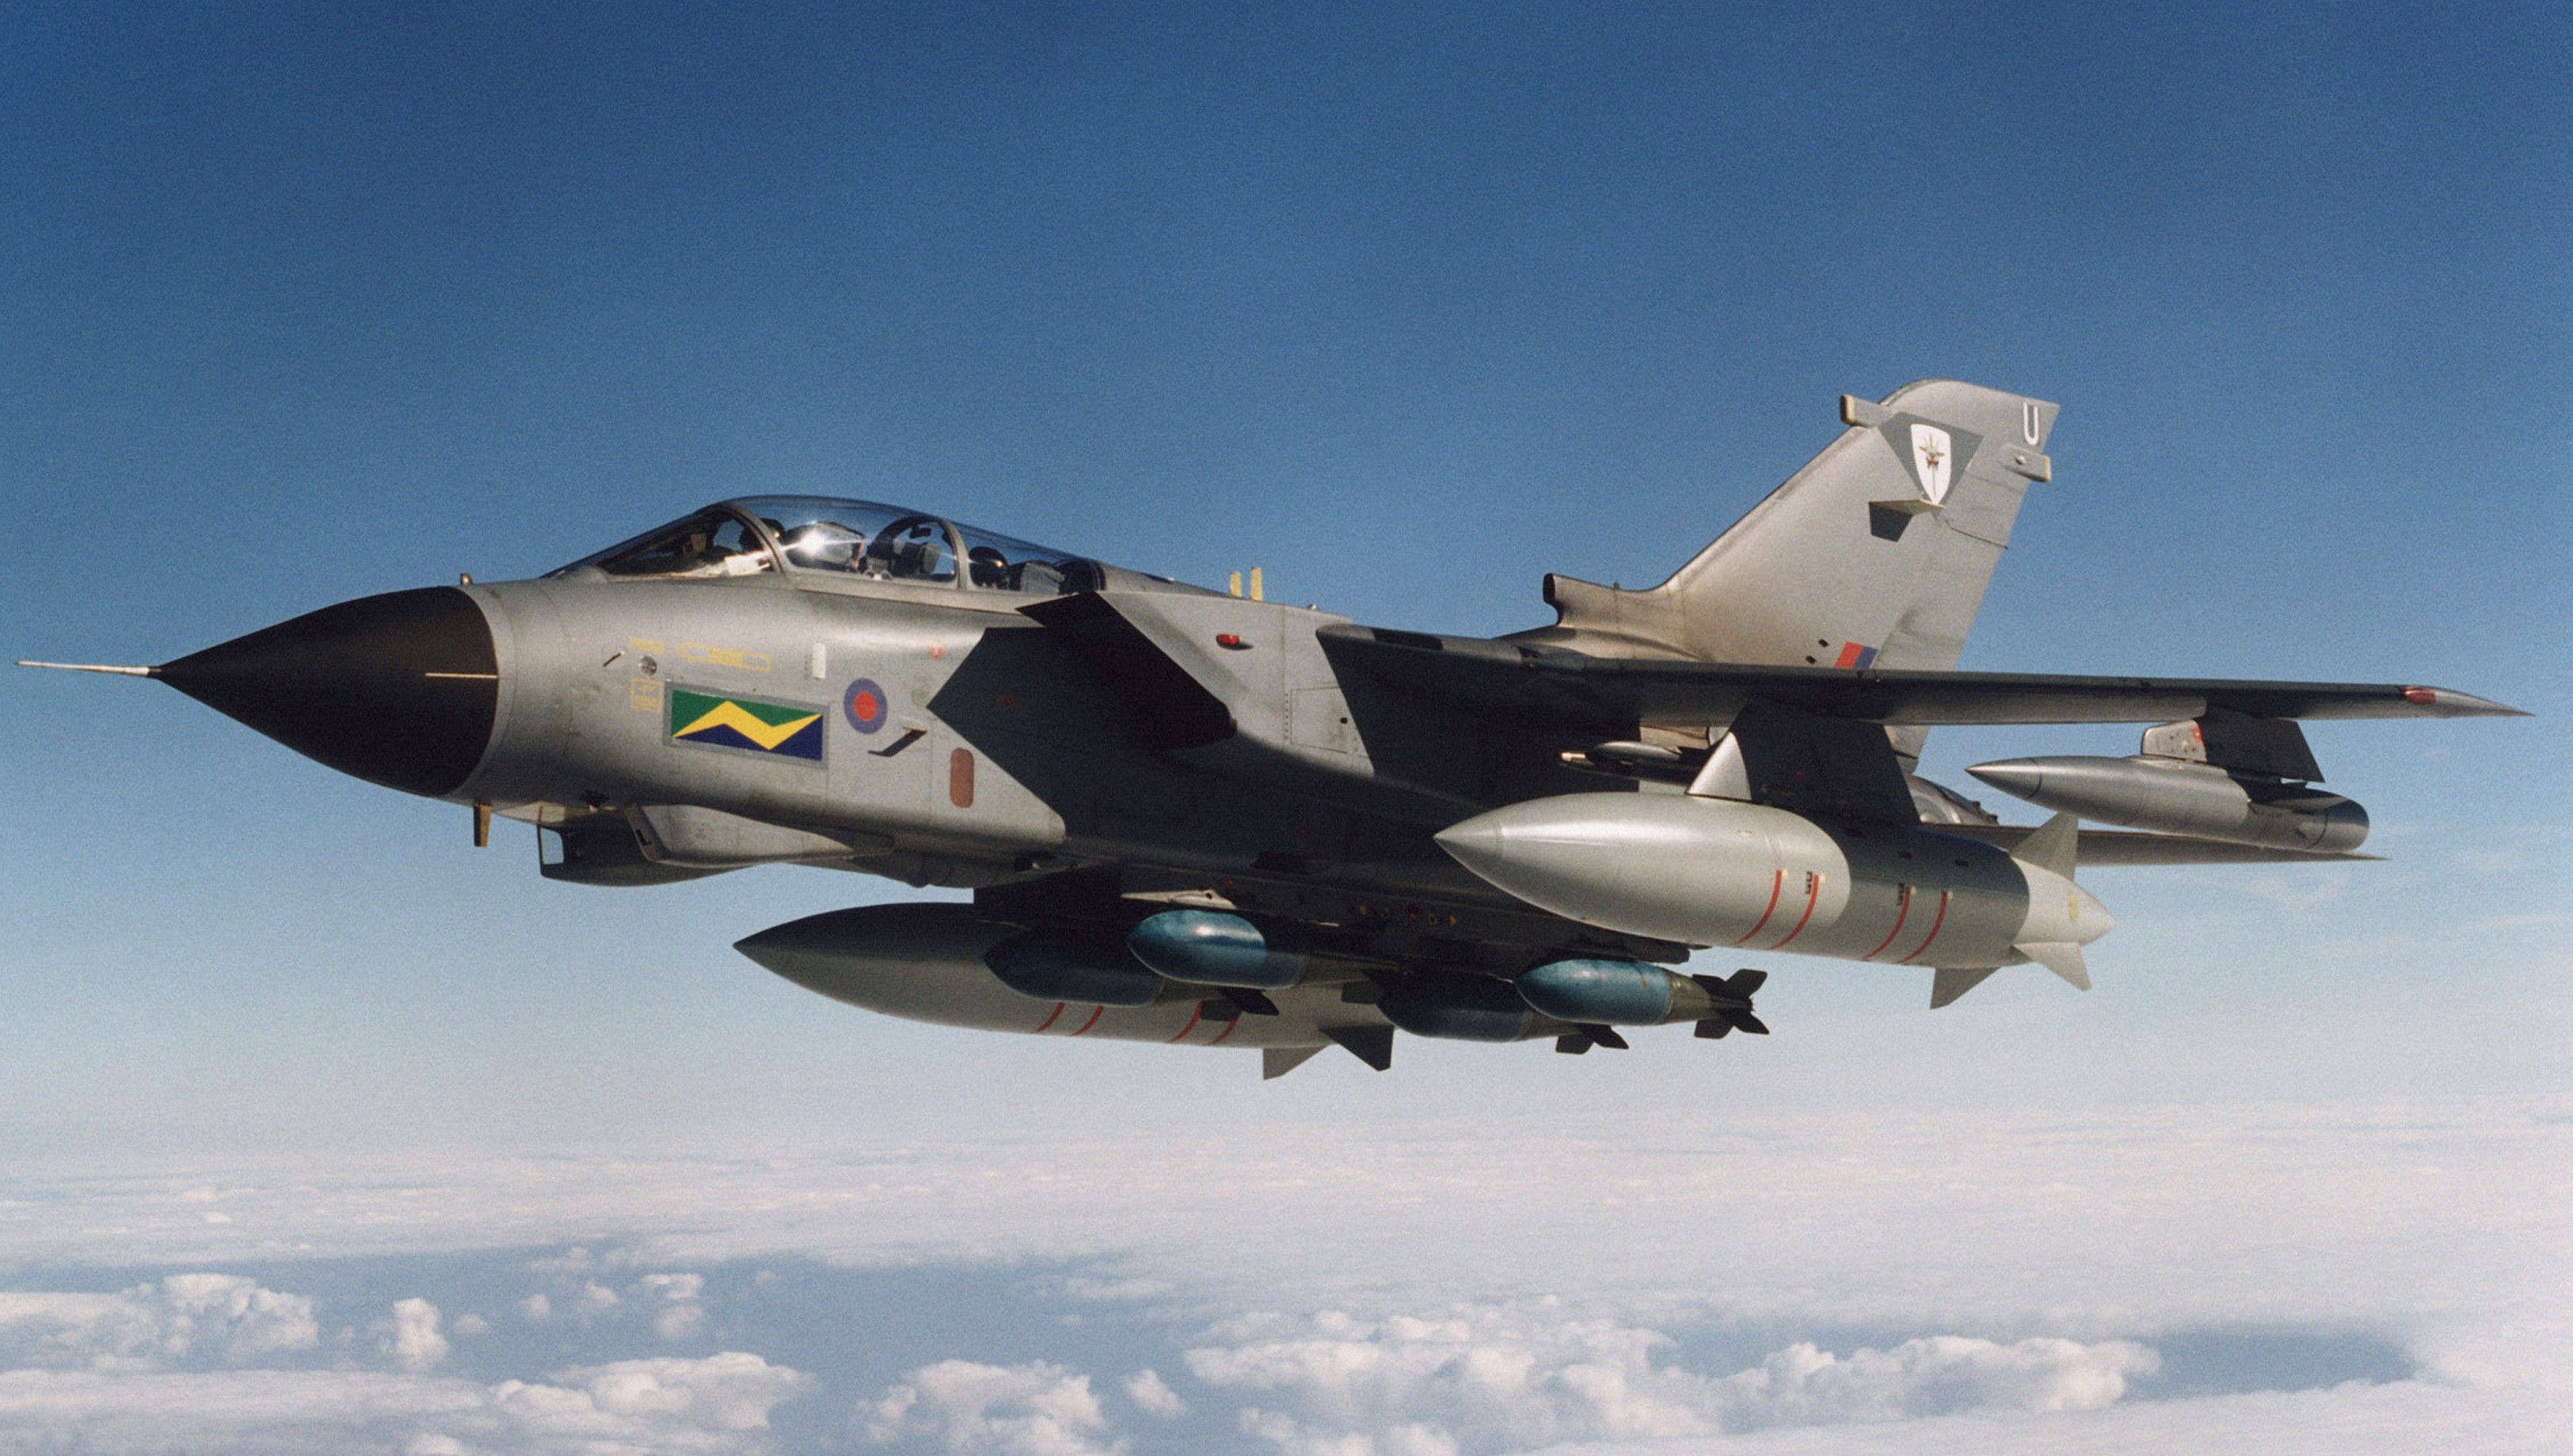 Stíhacie lietadlo Tornado GR4 patriace Royal Air Force